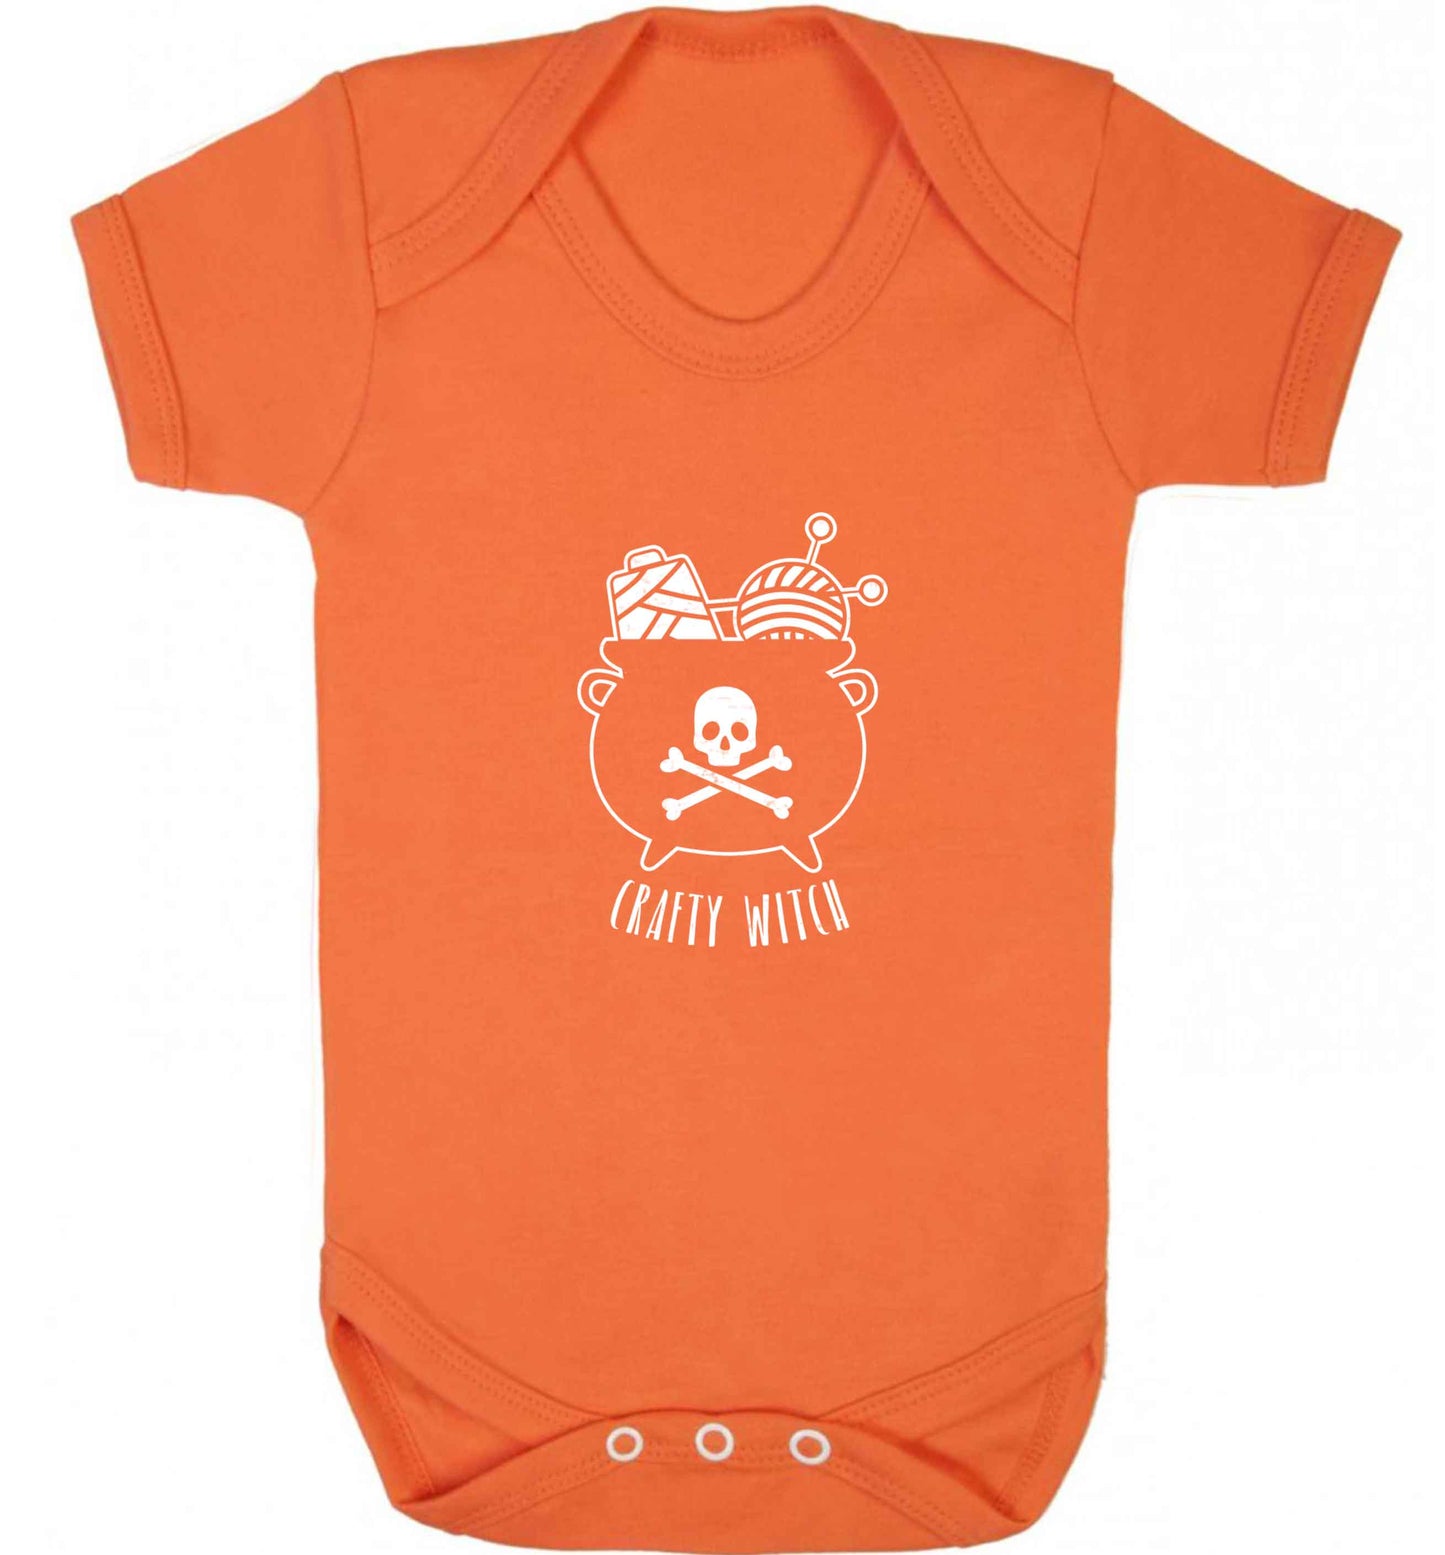 Crafty witch baby vest orange 18-24 months